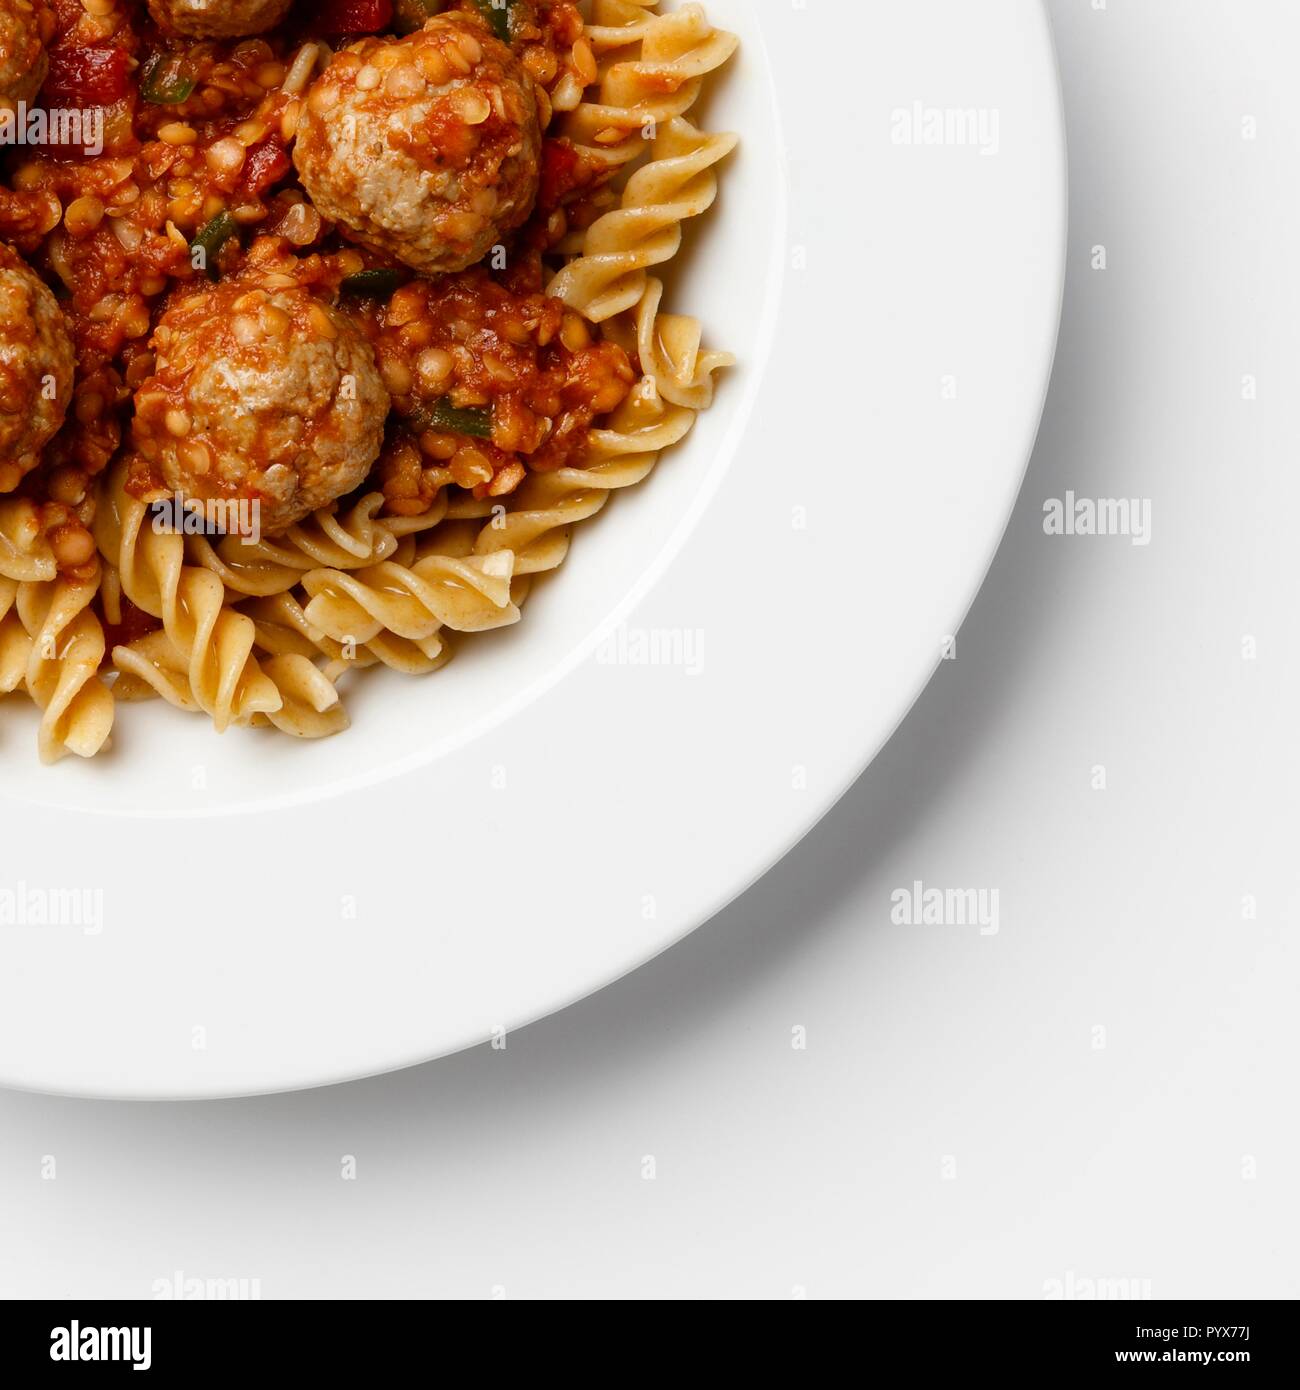 Ecke der Platte auf Fleischbällchen in eine Tomate Sause mit Paste Wendungen, auf einem weißen Hintergrund. Stockfoto